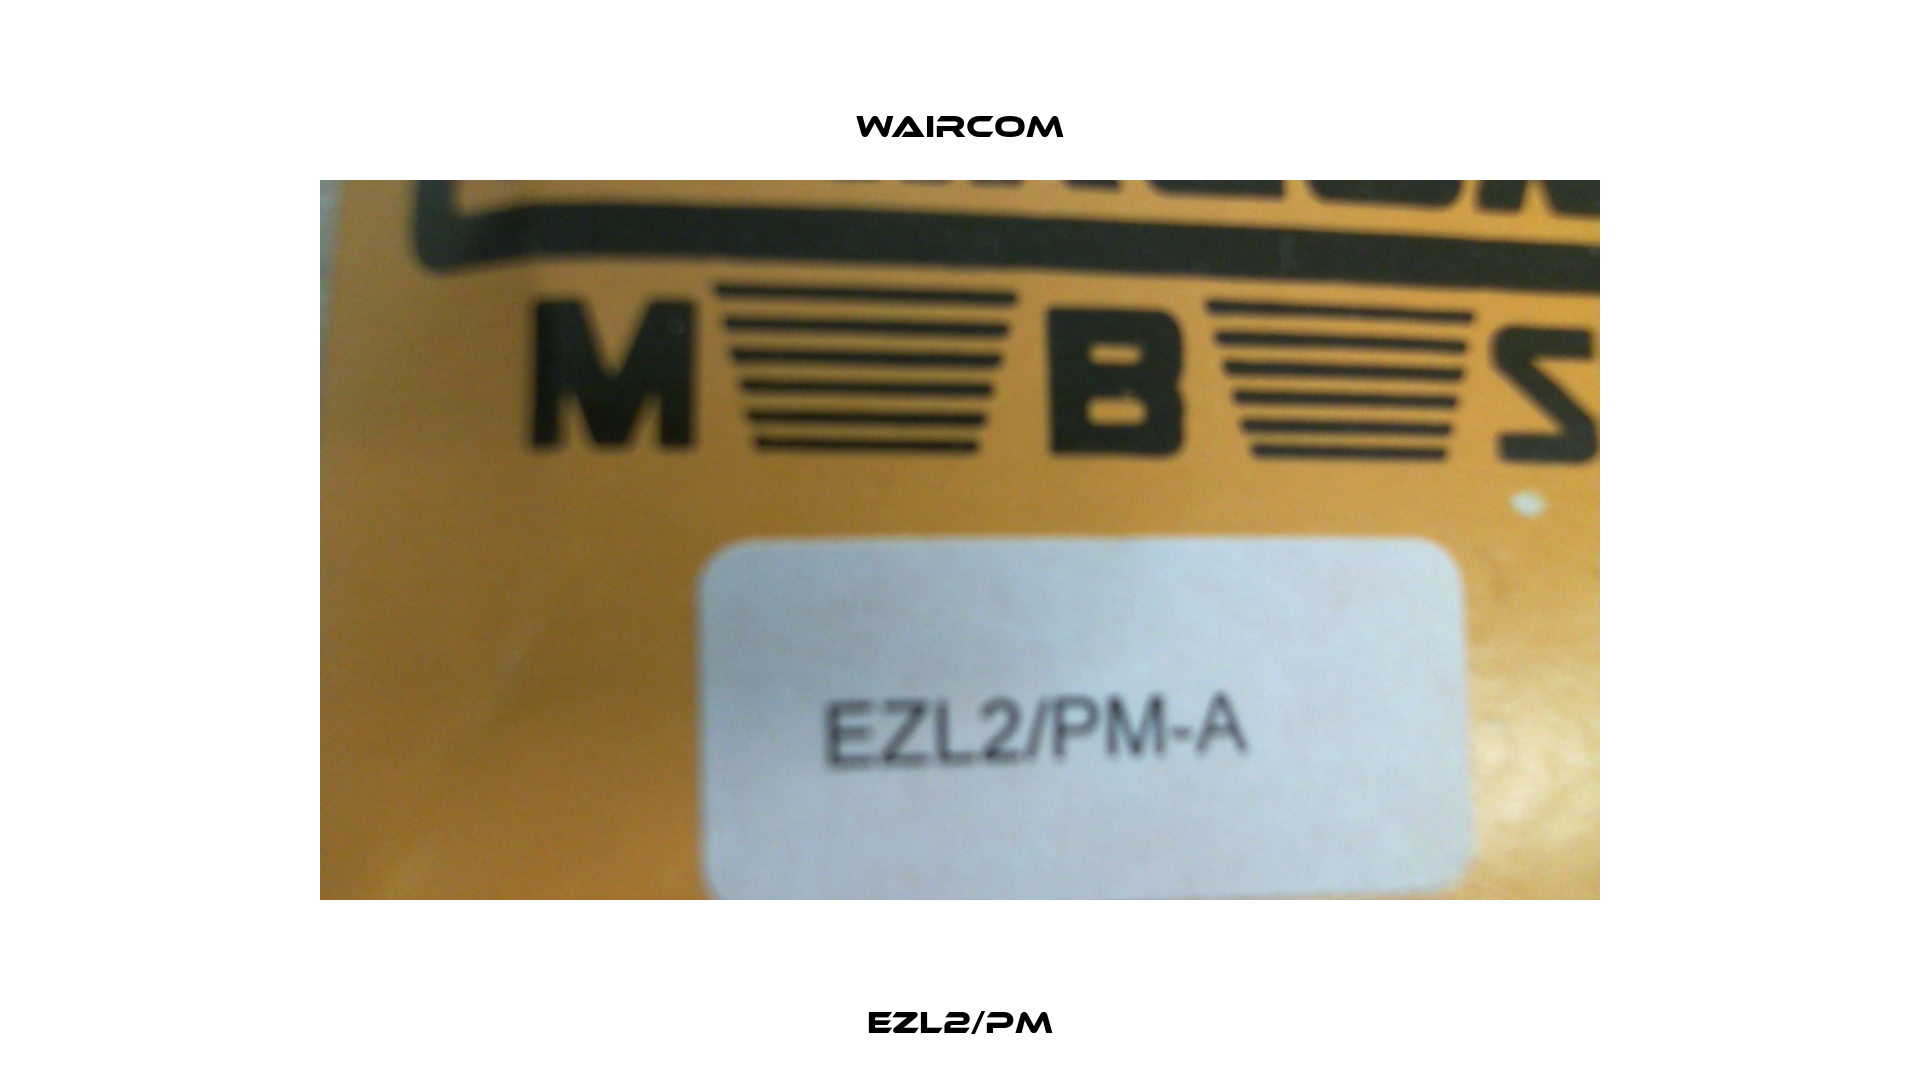 EZL2/PM Waircom